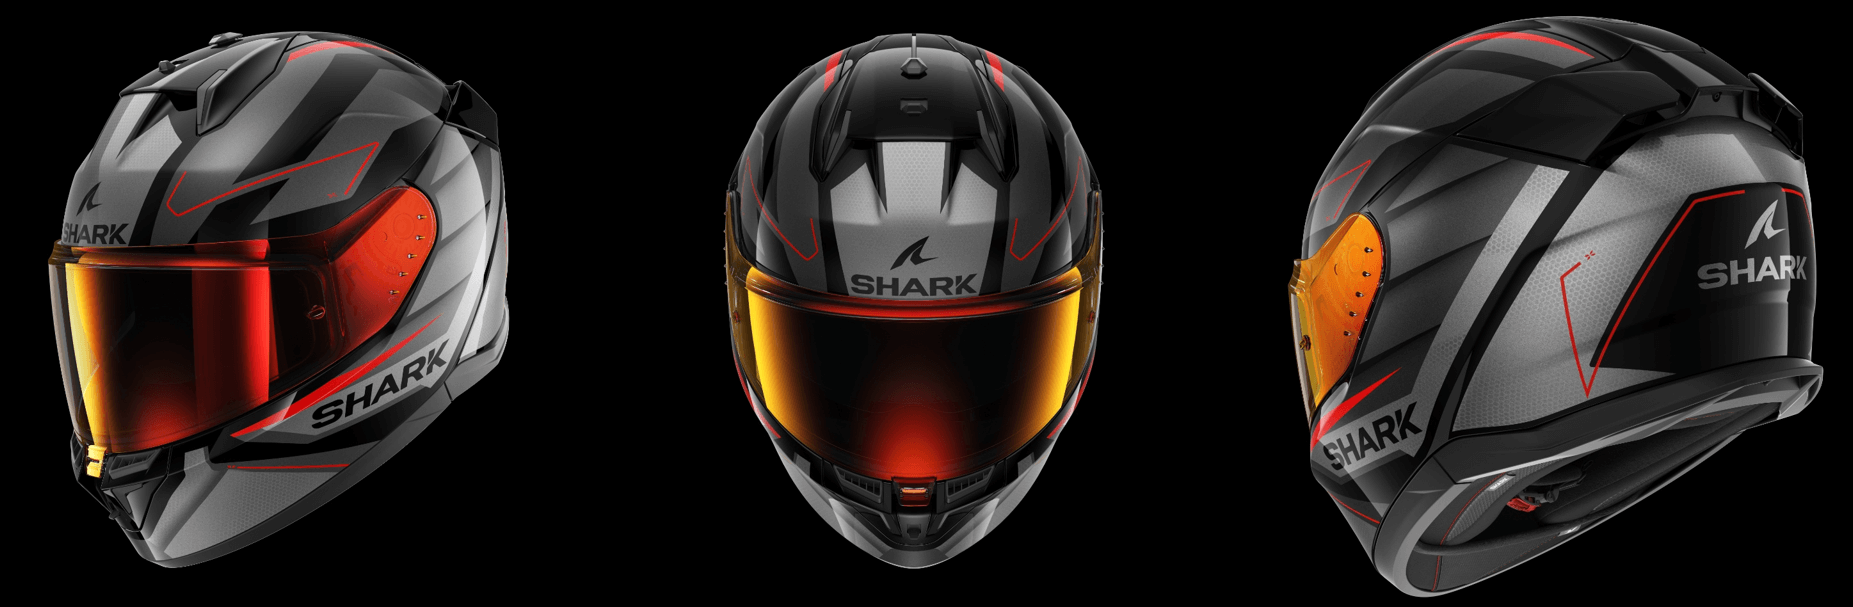 Rynek motocyklowy - nowości w ofercie SHARK